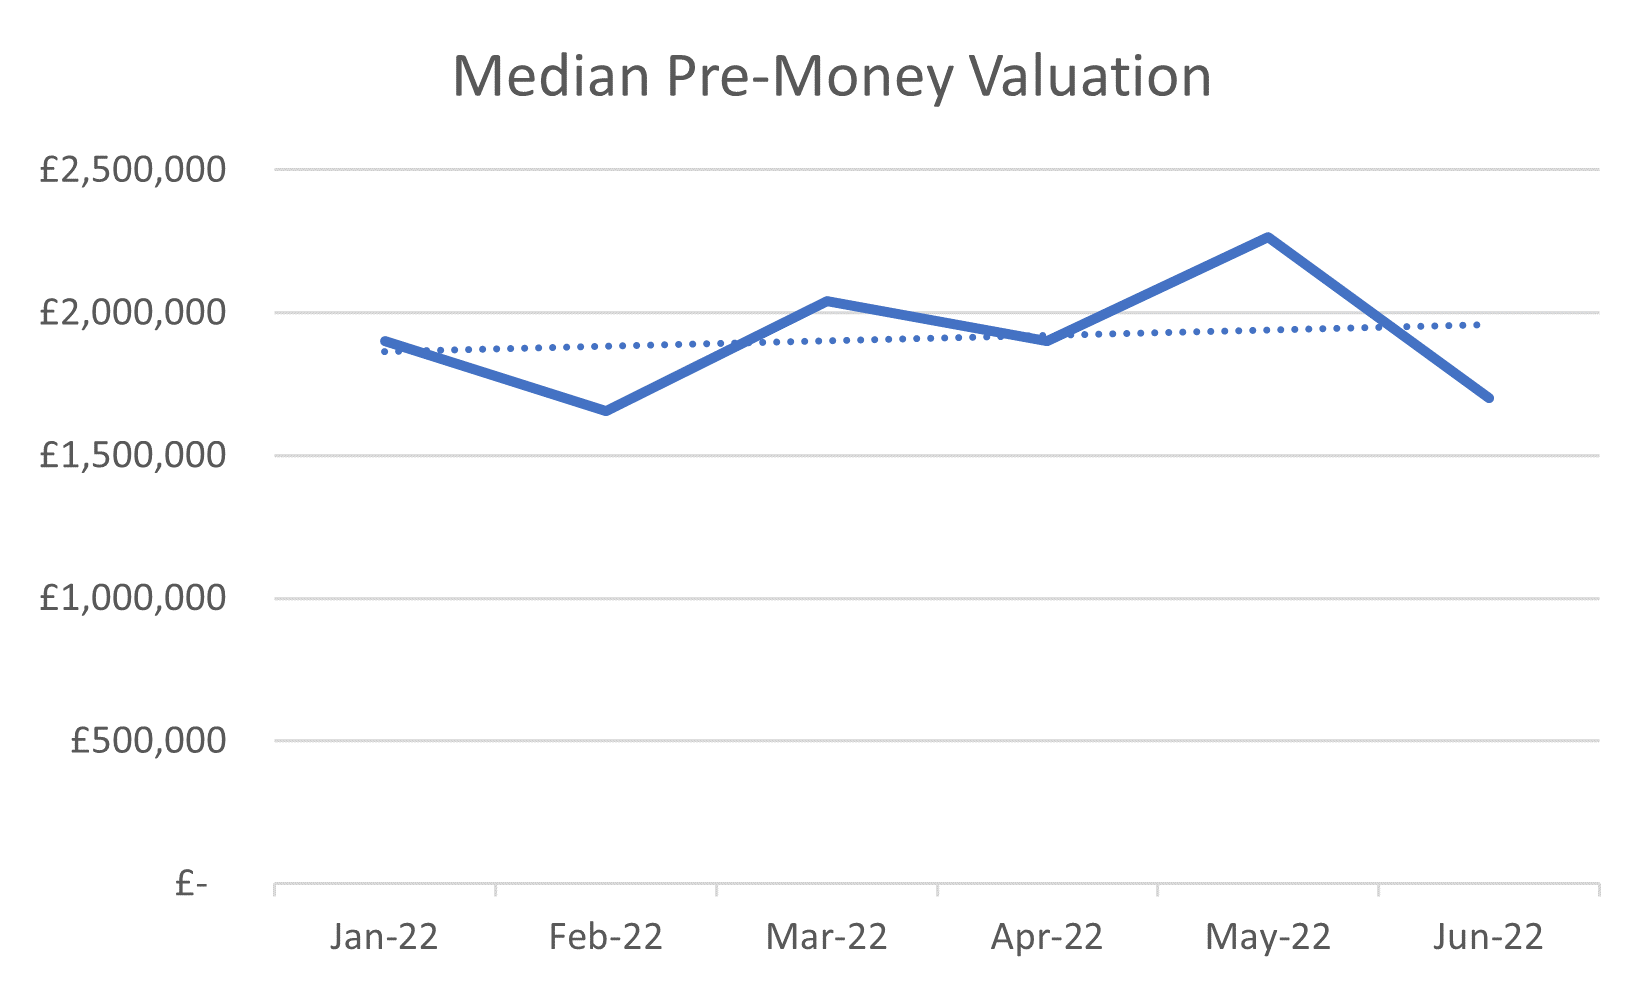 Median Pre-Money Valuation Jan - Jun 2022